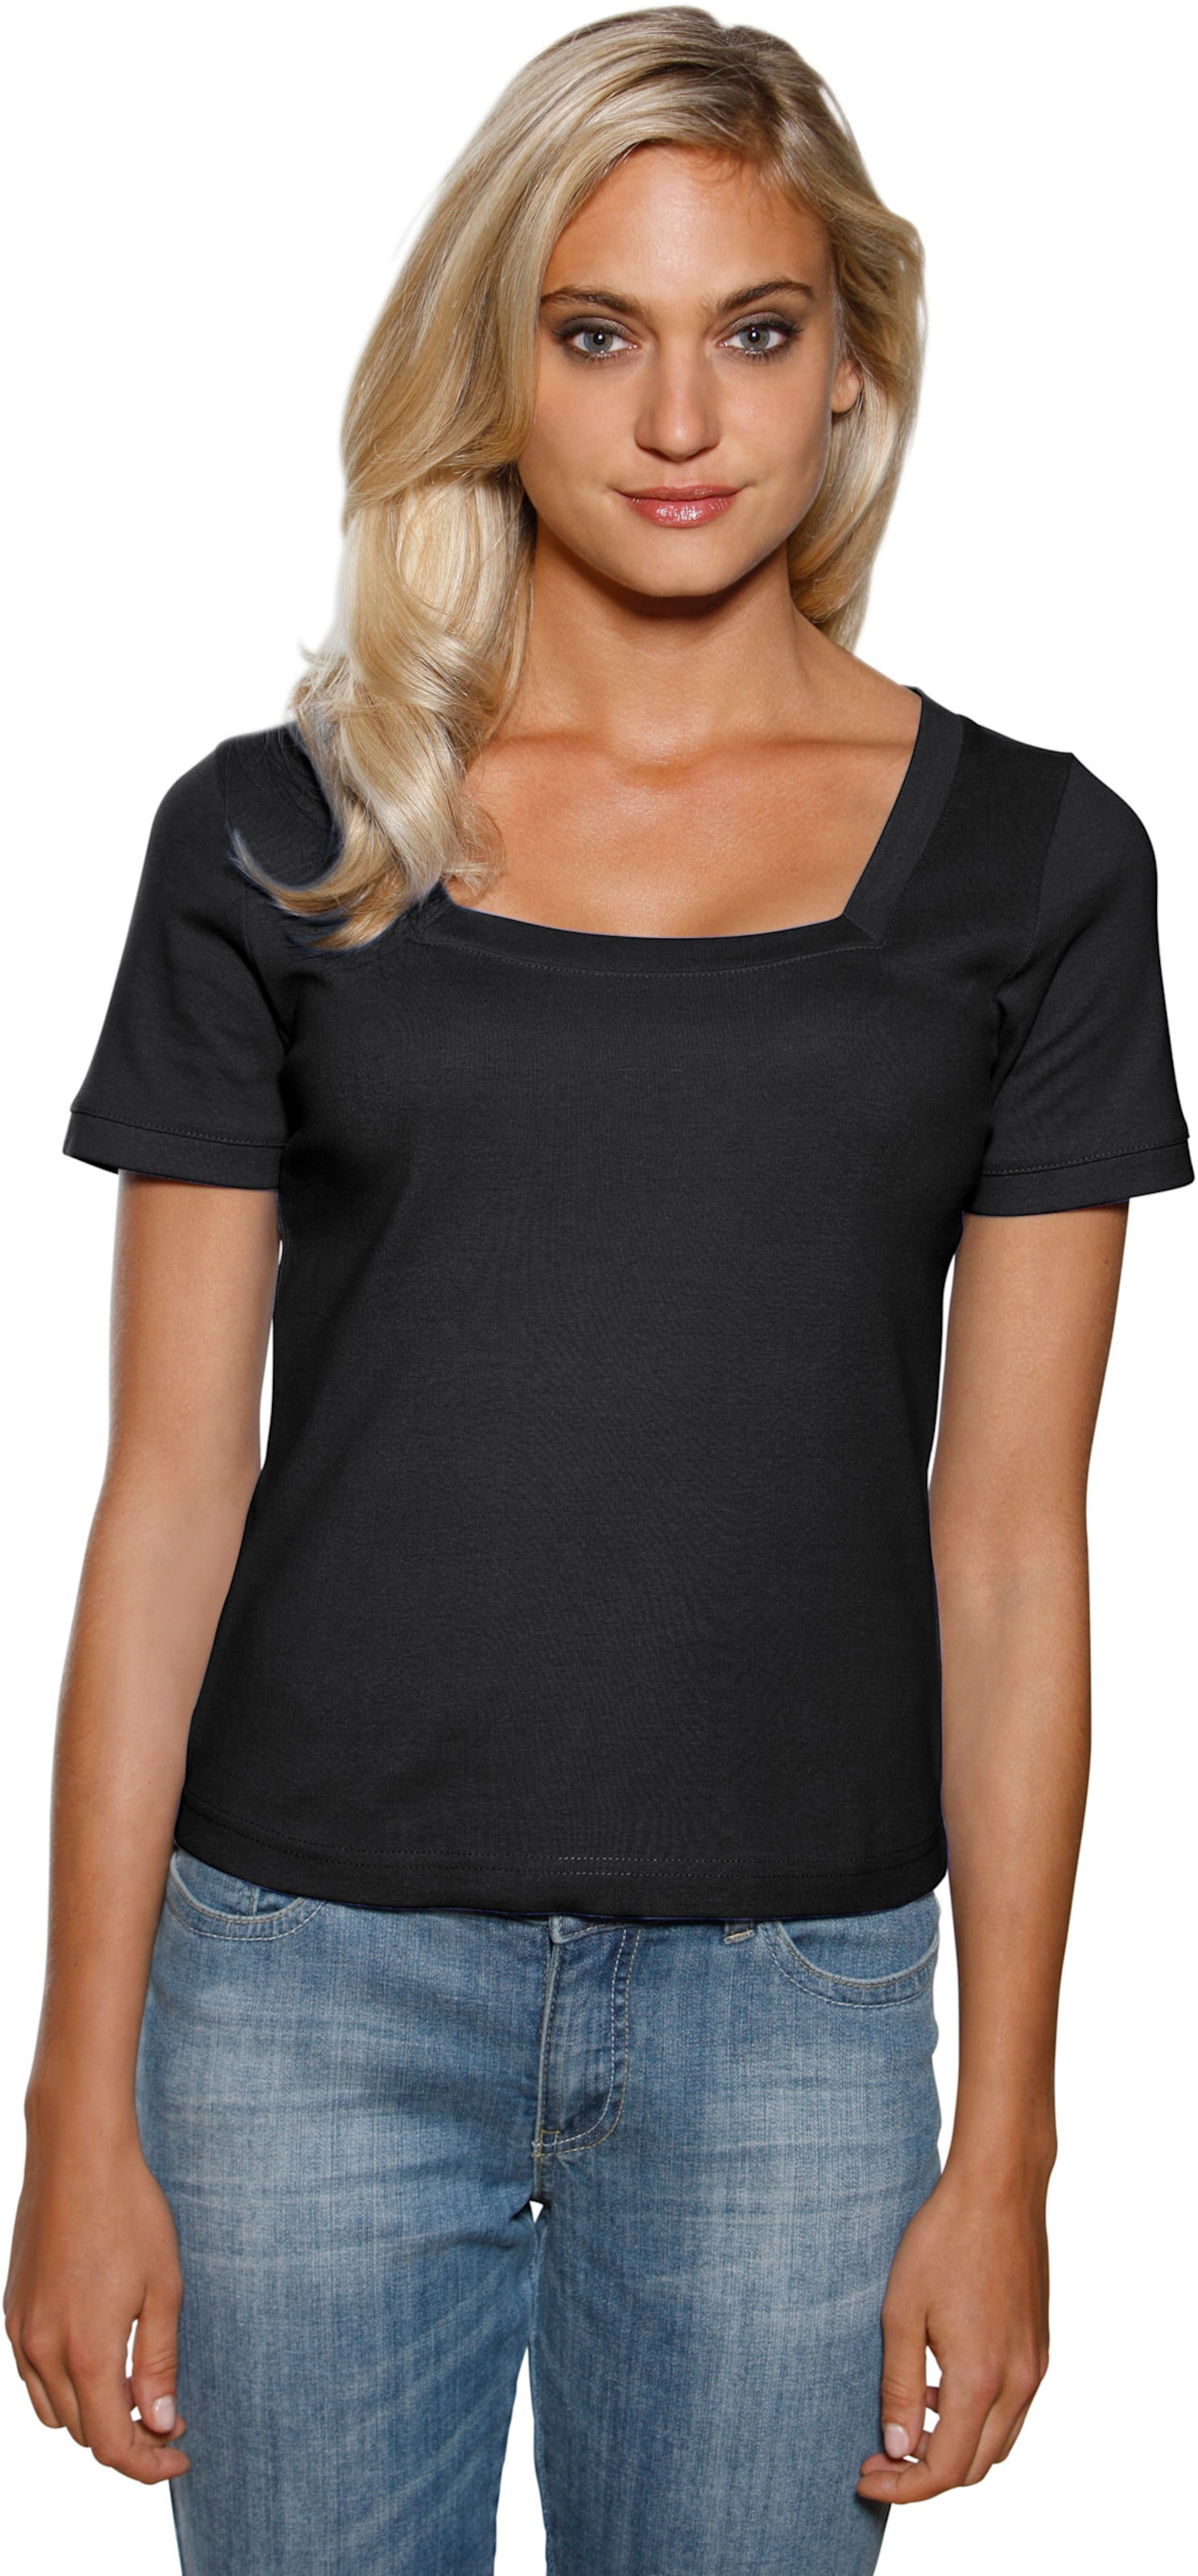 Witt Damen Carré-Shirt, schwarz